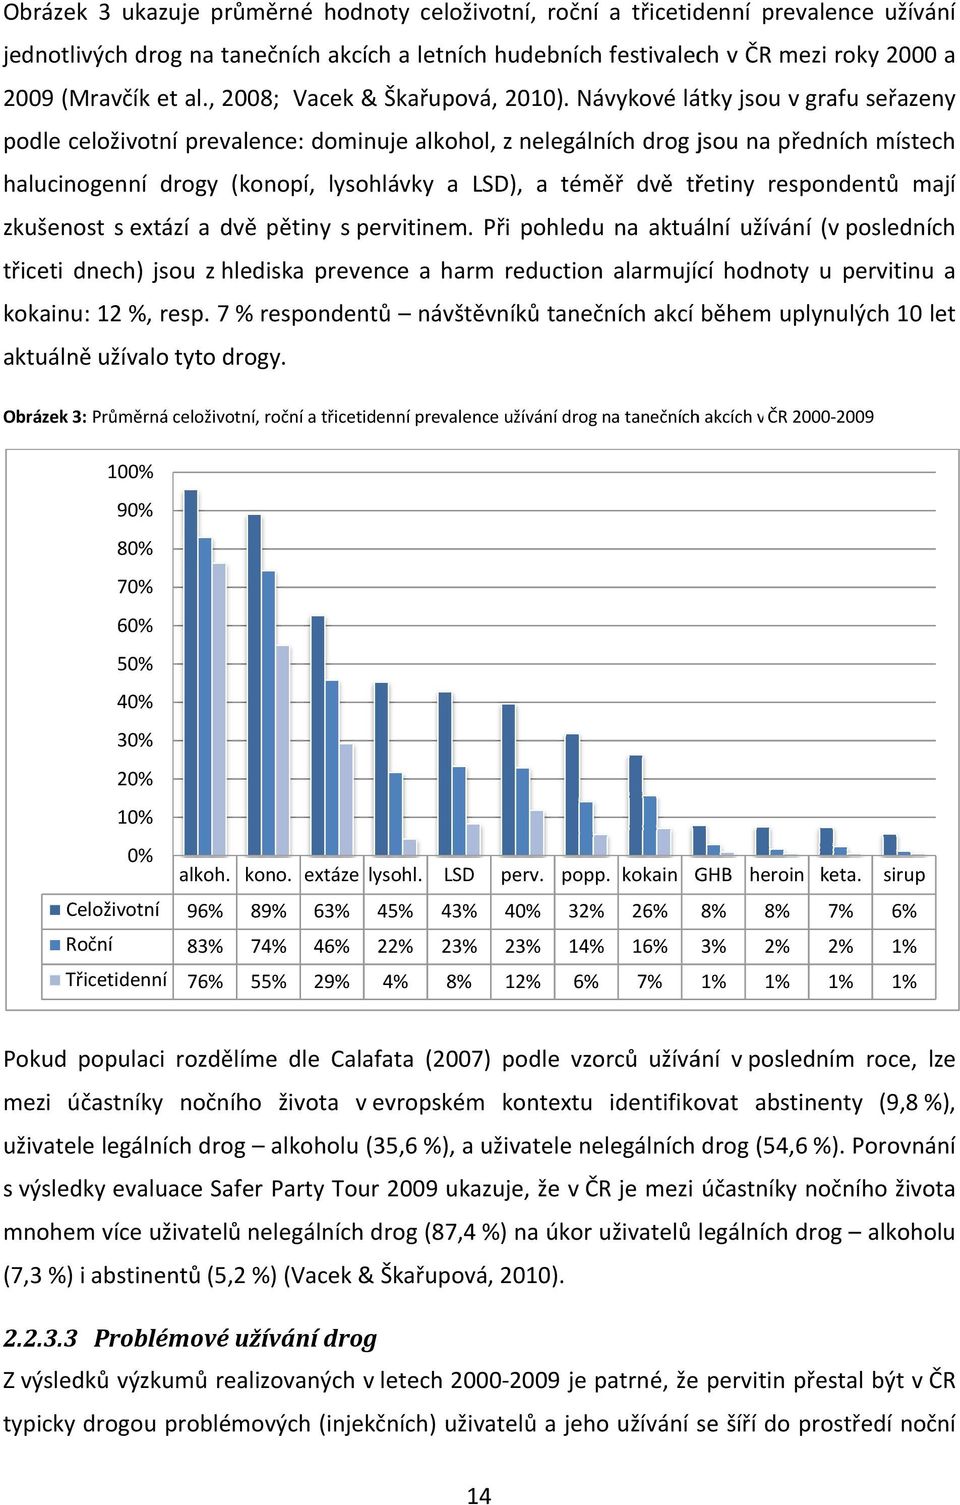 Návykové látky jsou v grafu seřazeny podle celoživotní prevalence: dominuje alkohol, z nelegálních drog jsou na předních místech halucinogenní drogy (konopí, lysohlávky a LSD), a téměř dvě třetiny